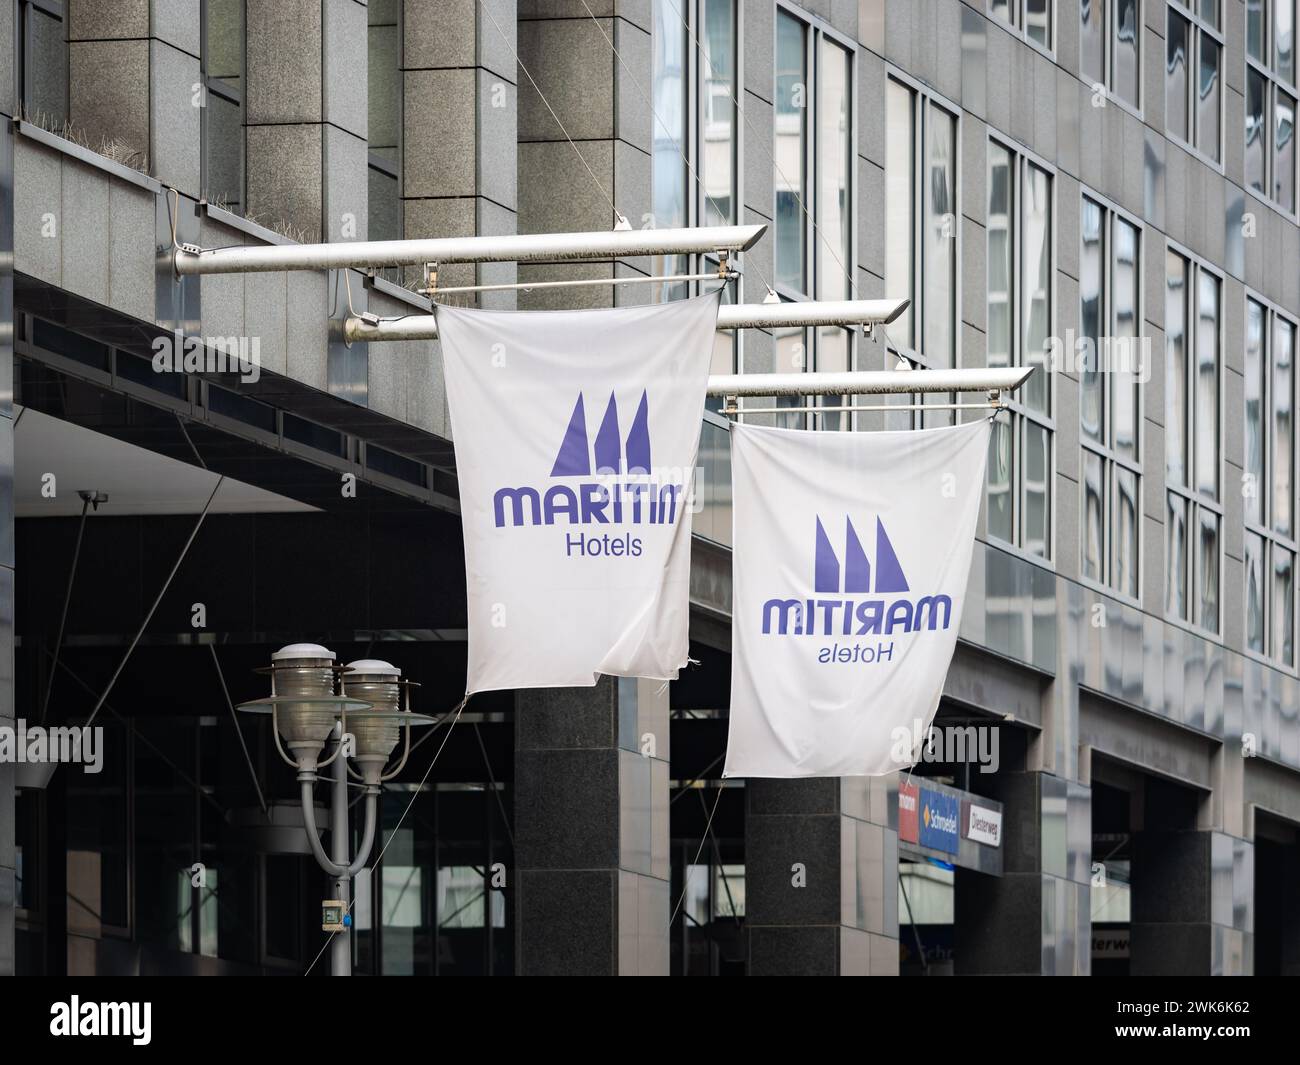 Maritim Hotels drapeaux à l'entrée du bâtiment de l'hôtel. Logo signe sur le mur extérieur de l'entreprise hôtelière. Industrie du voyage dans une grande ville. Banque D'Images